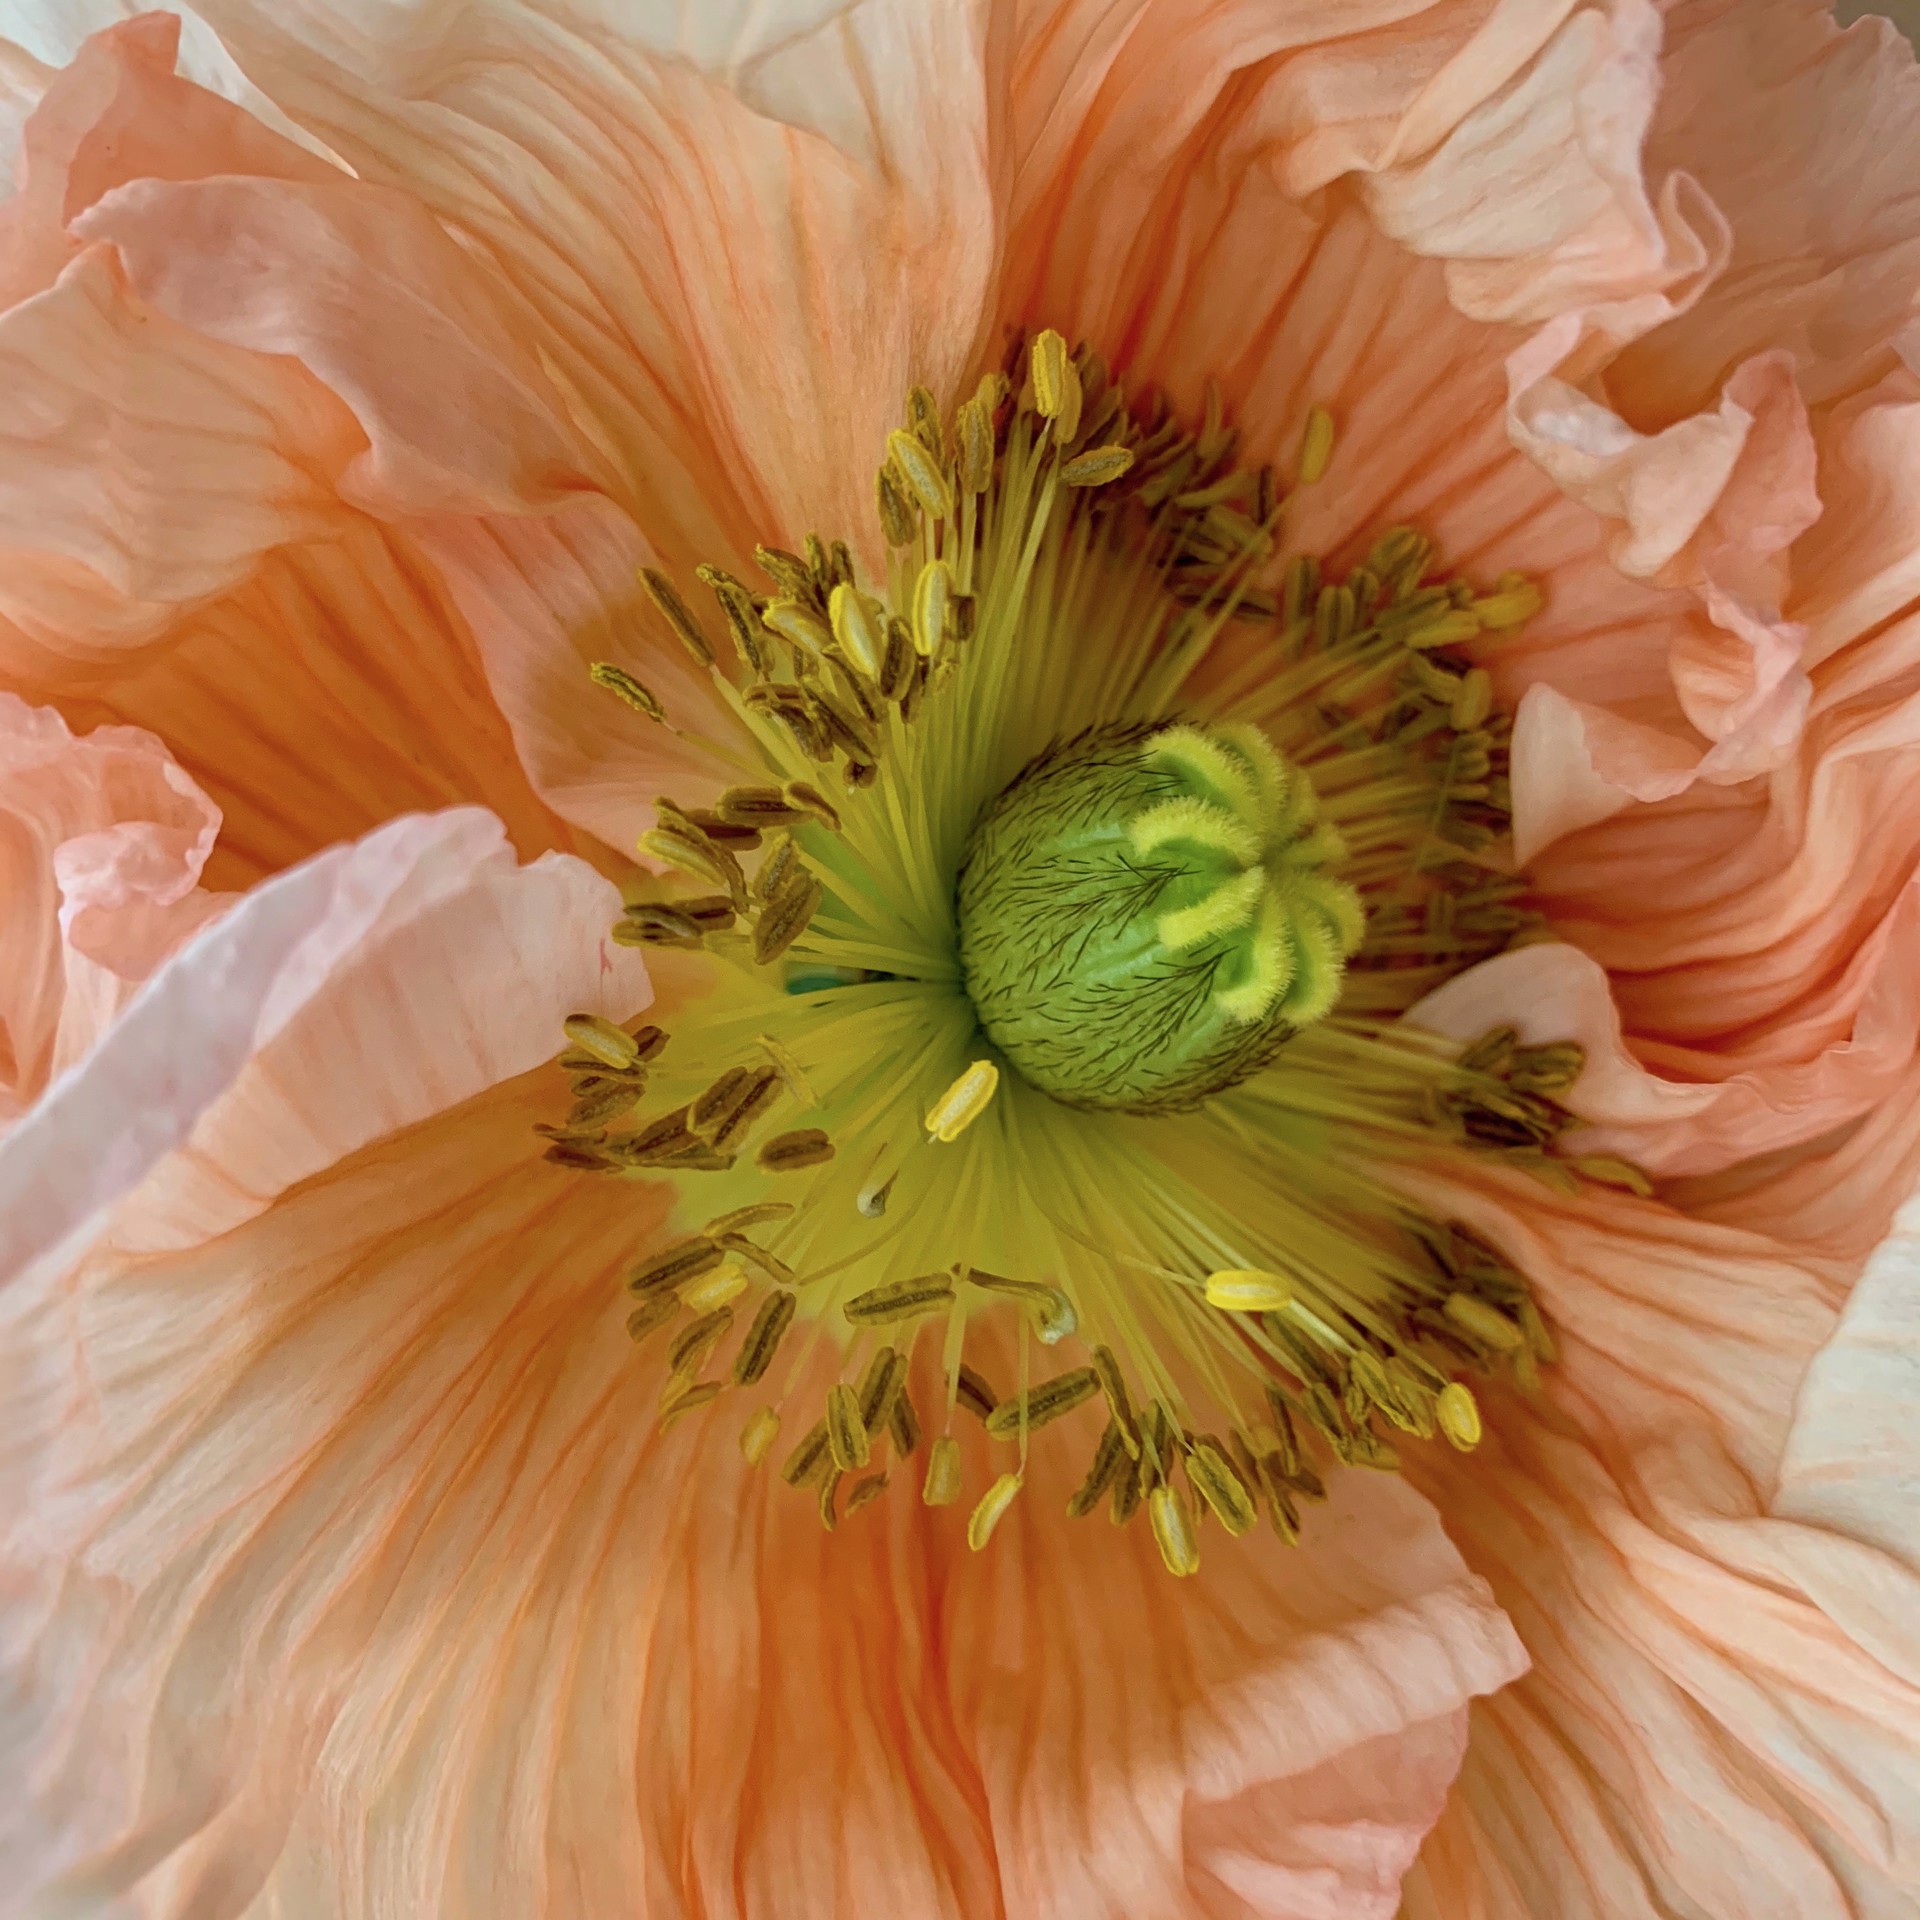 Blooming by Stephanie Danforth